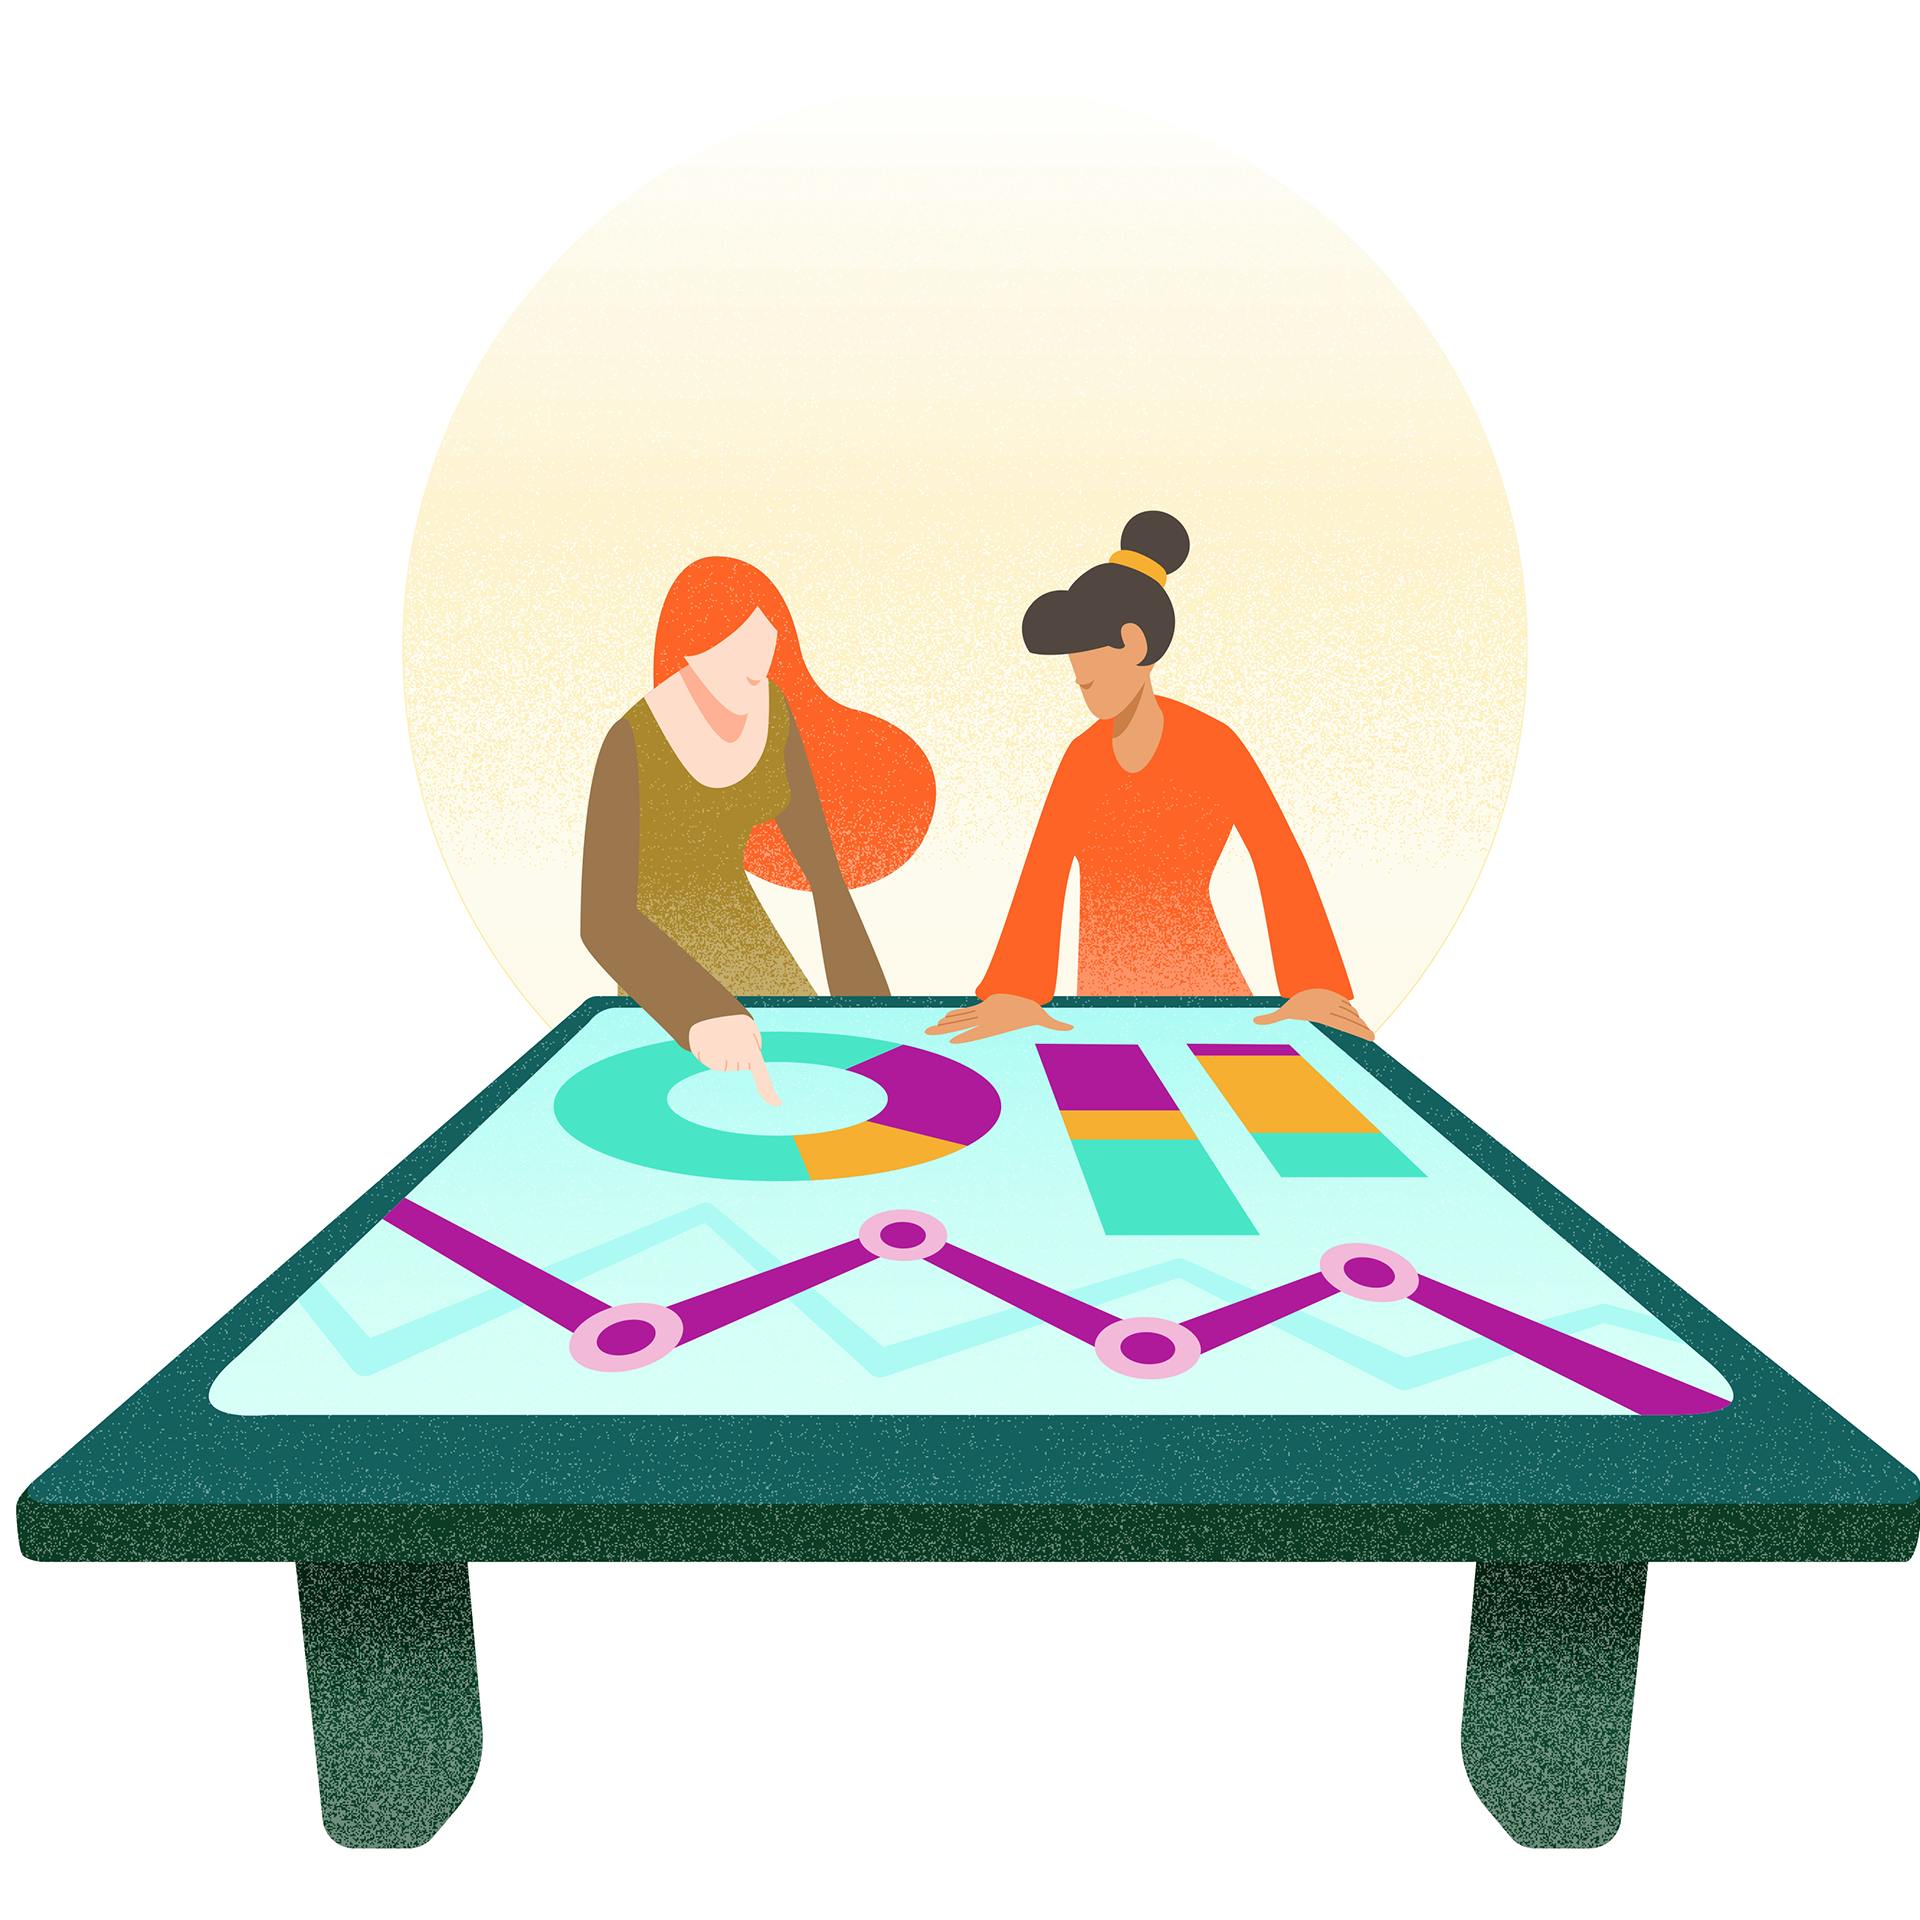 Een illustratie van twee vrouwen die samen kijken naar een tafel waar digitaal grafieken en tabellen op zijn afgebeeld.